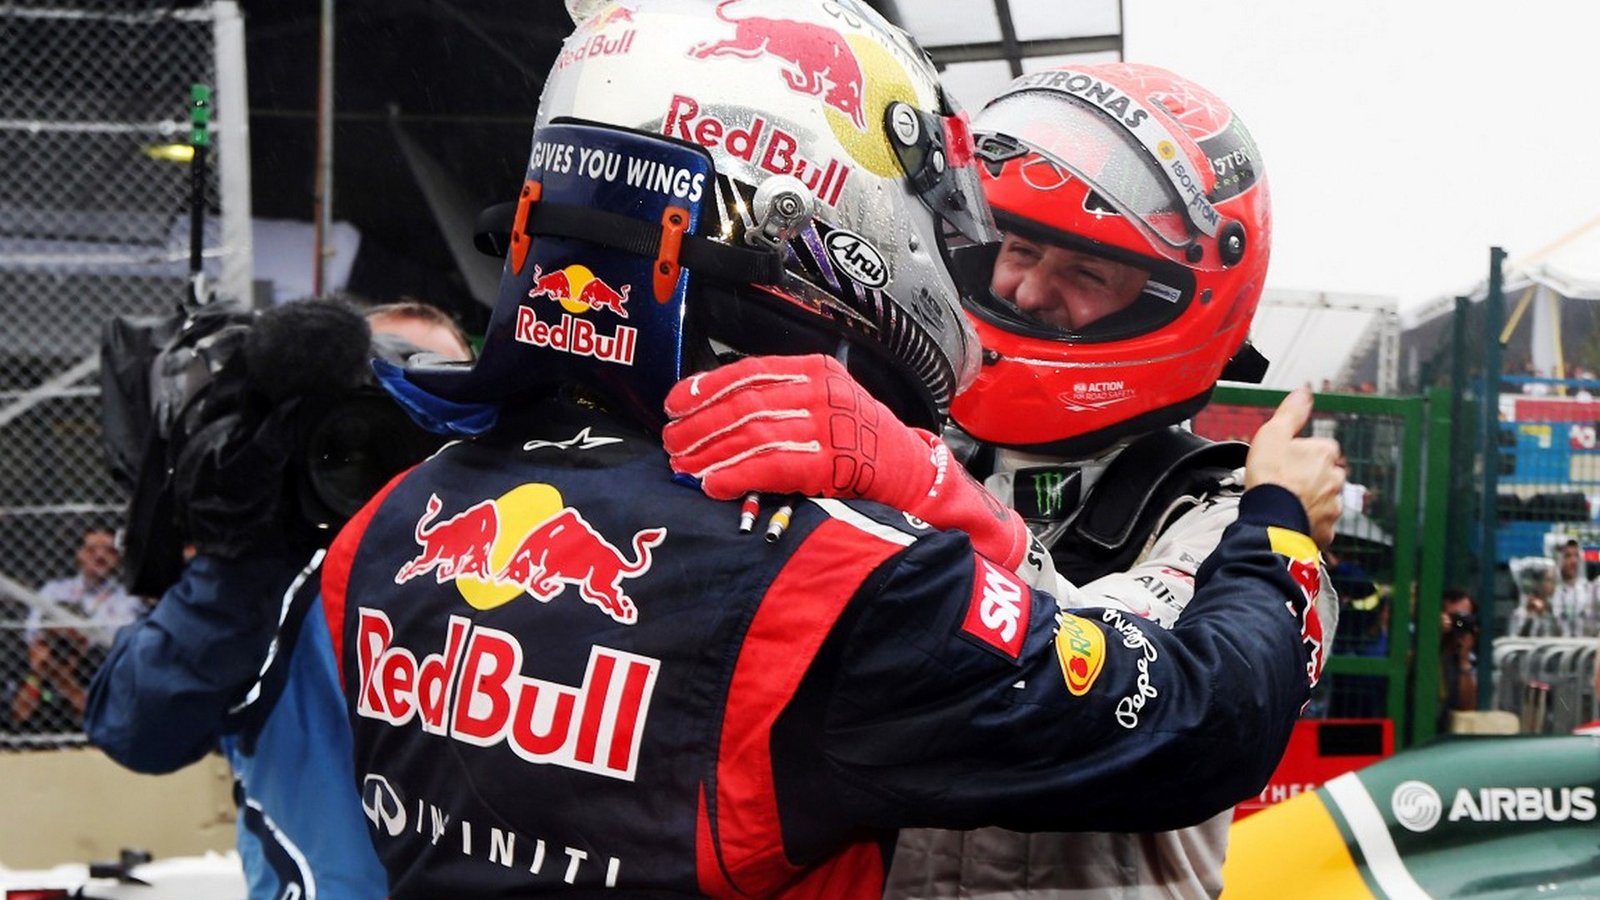 Sebastian Vettel foi o ultimo a conquistar um título em Interlagos, no mesmo dia Michael Schumacher se despedia do público brasileiro e das pistas (Fonte: @Tumblr)